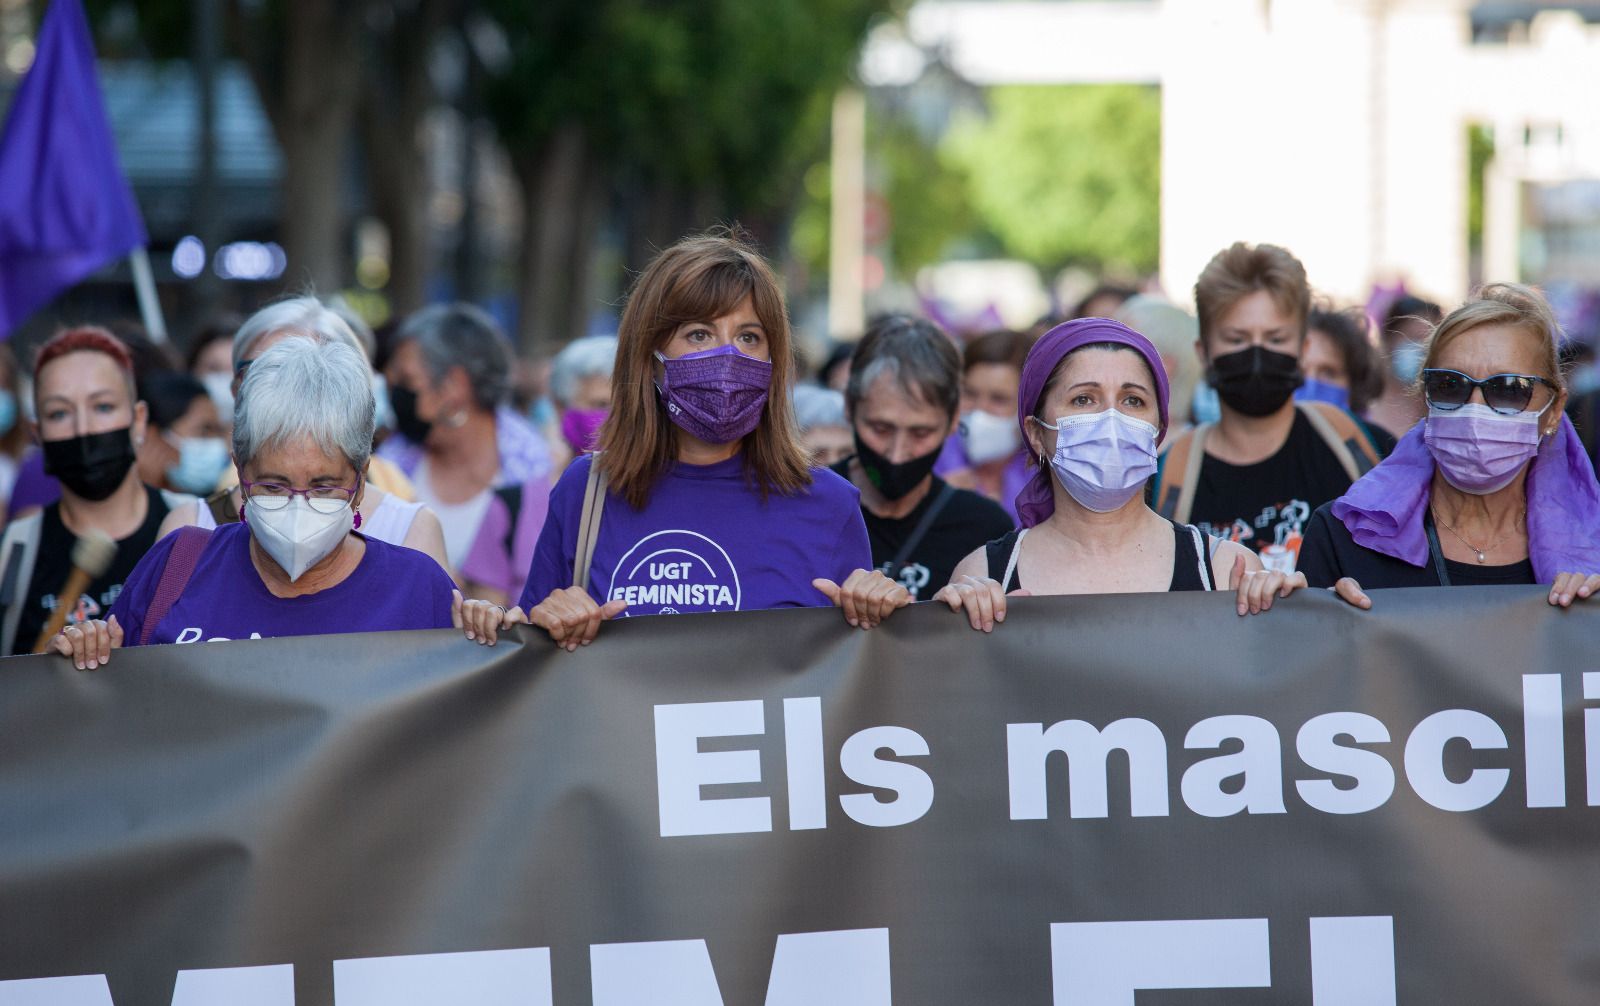 València clama contra los crímenes machistas